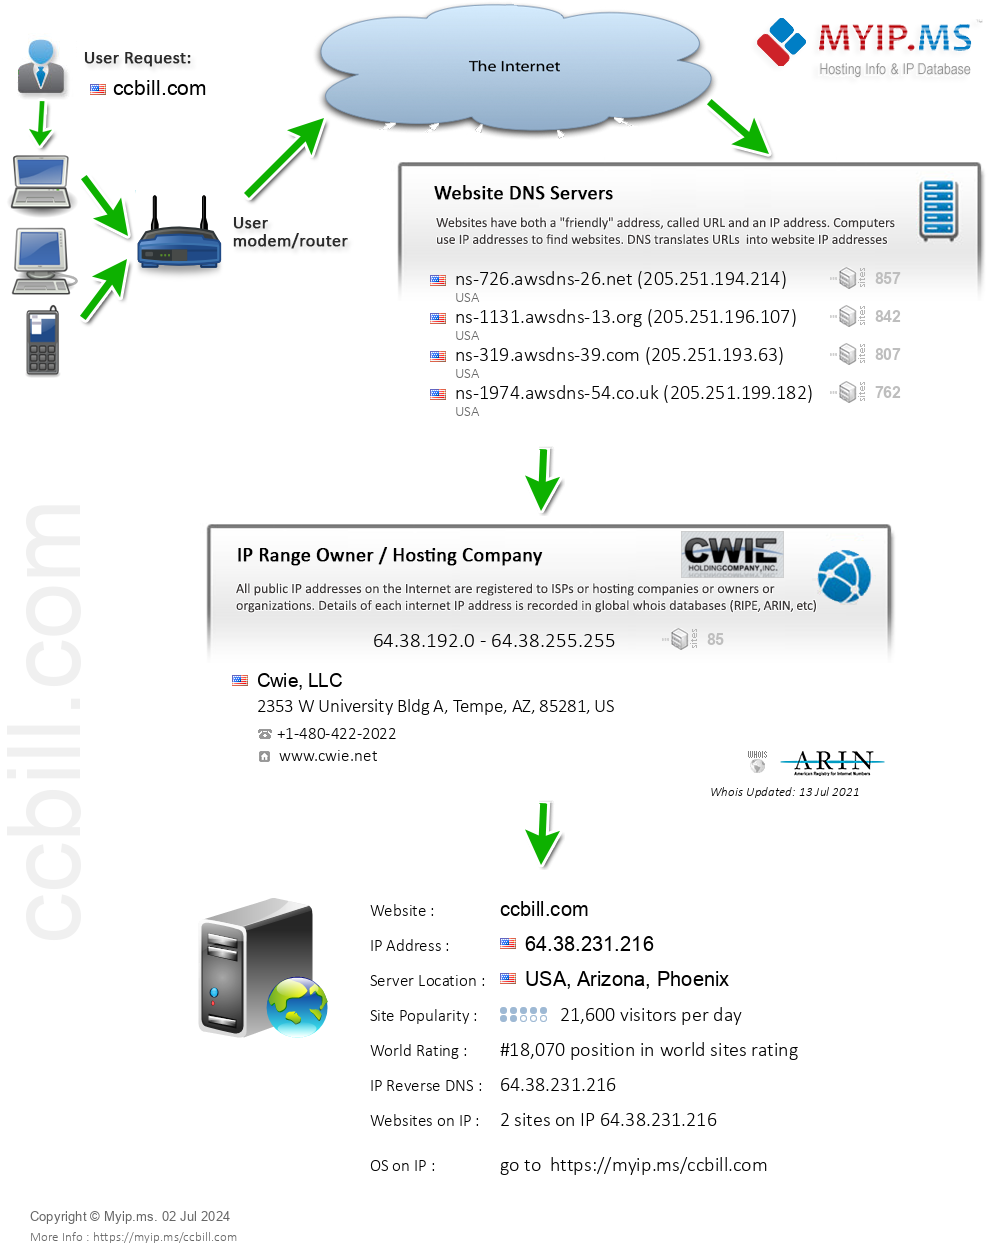 Ccbill.com - Website Hosting Visual IP Diagram